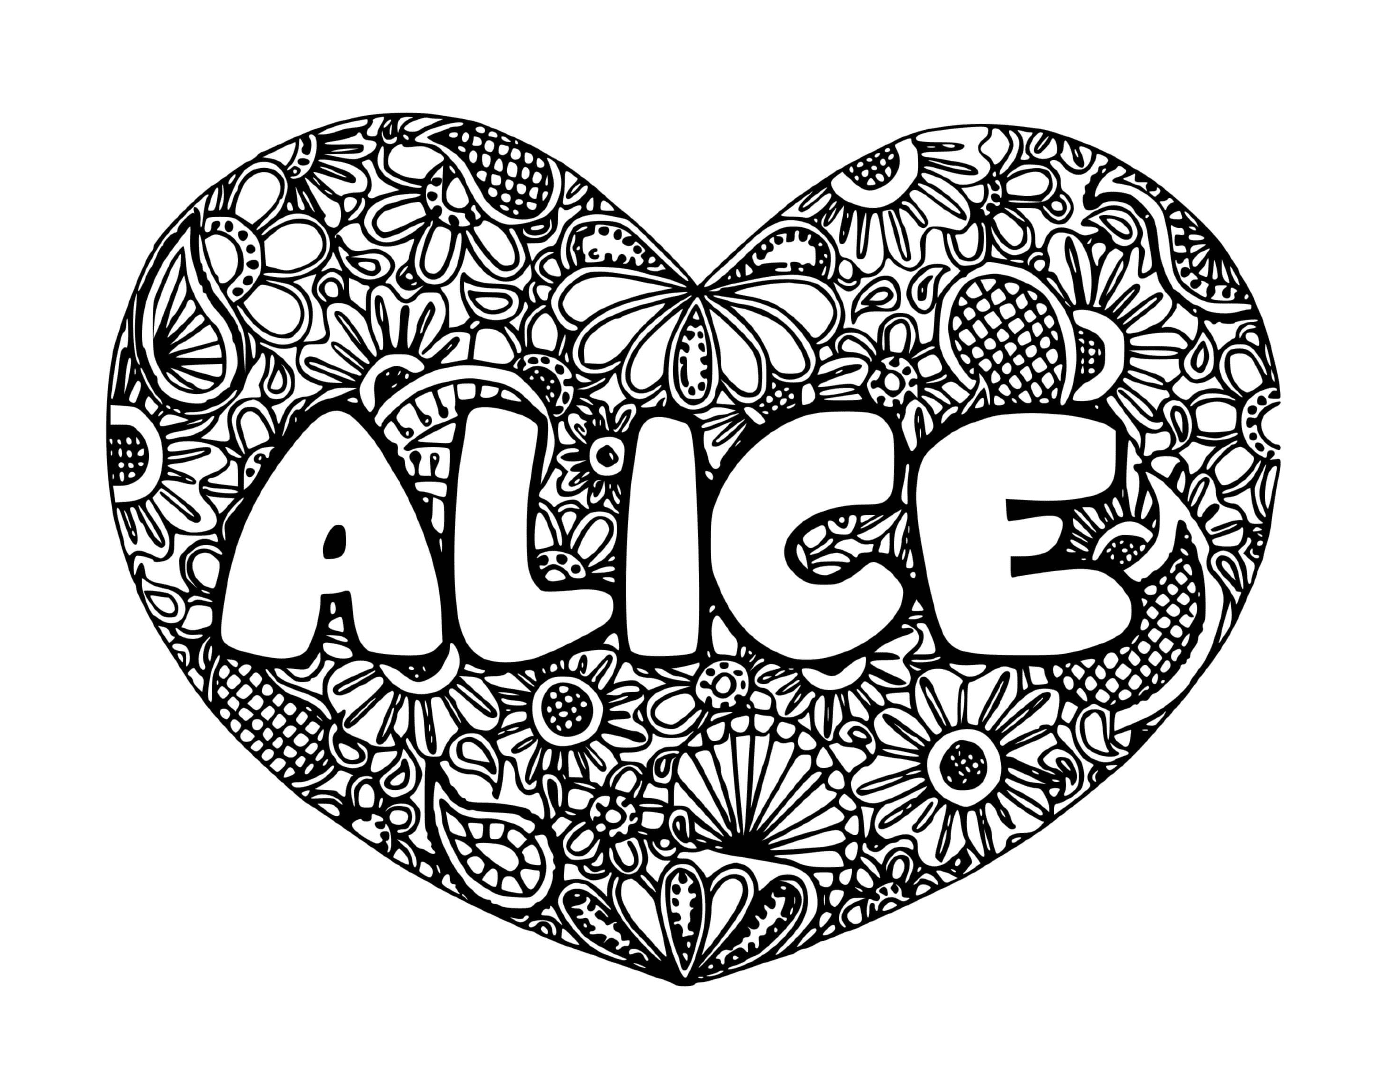  Un cuore con il nome Alice nel mezzo 